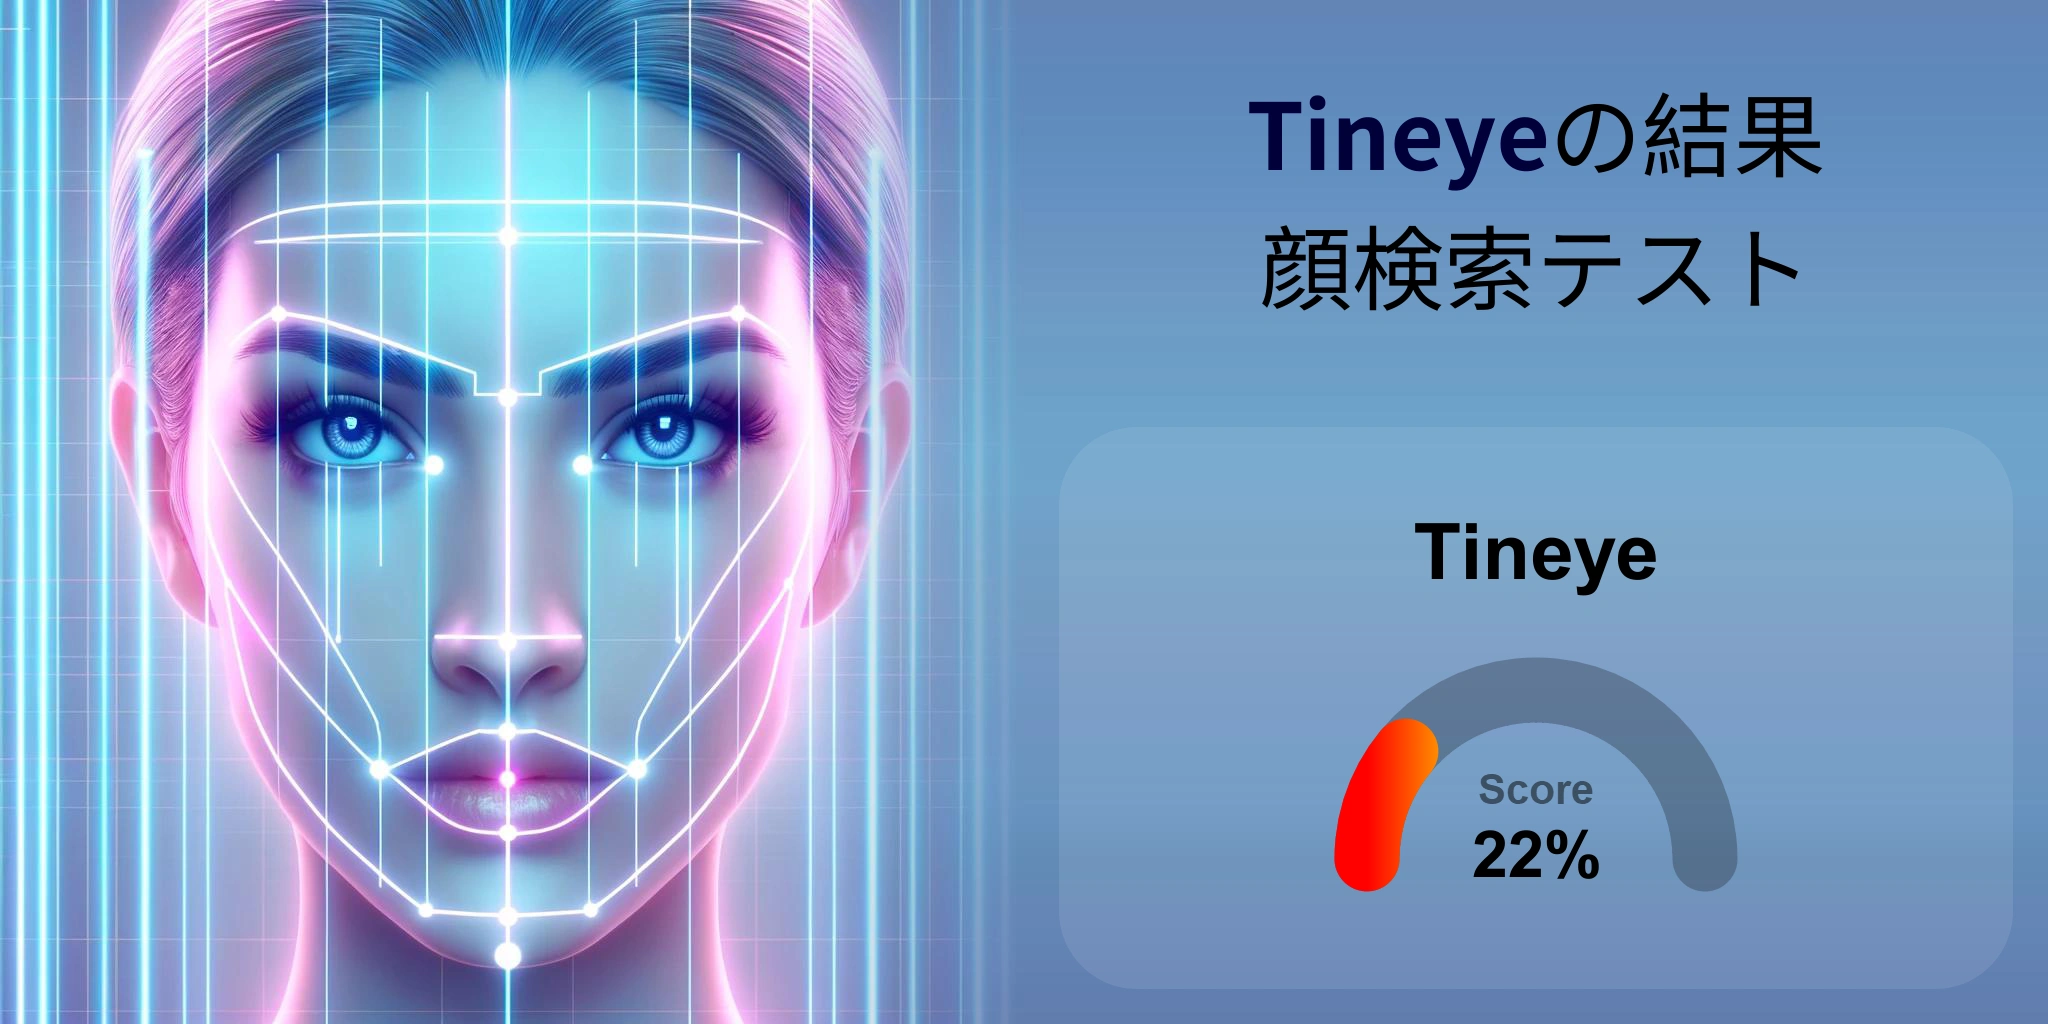 Tineye.com